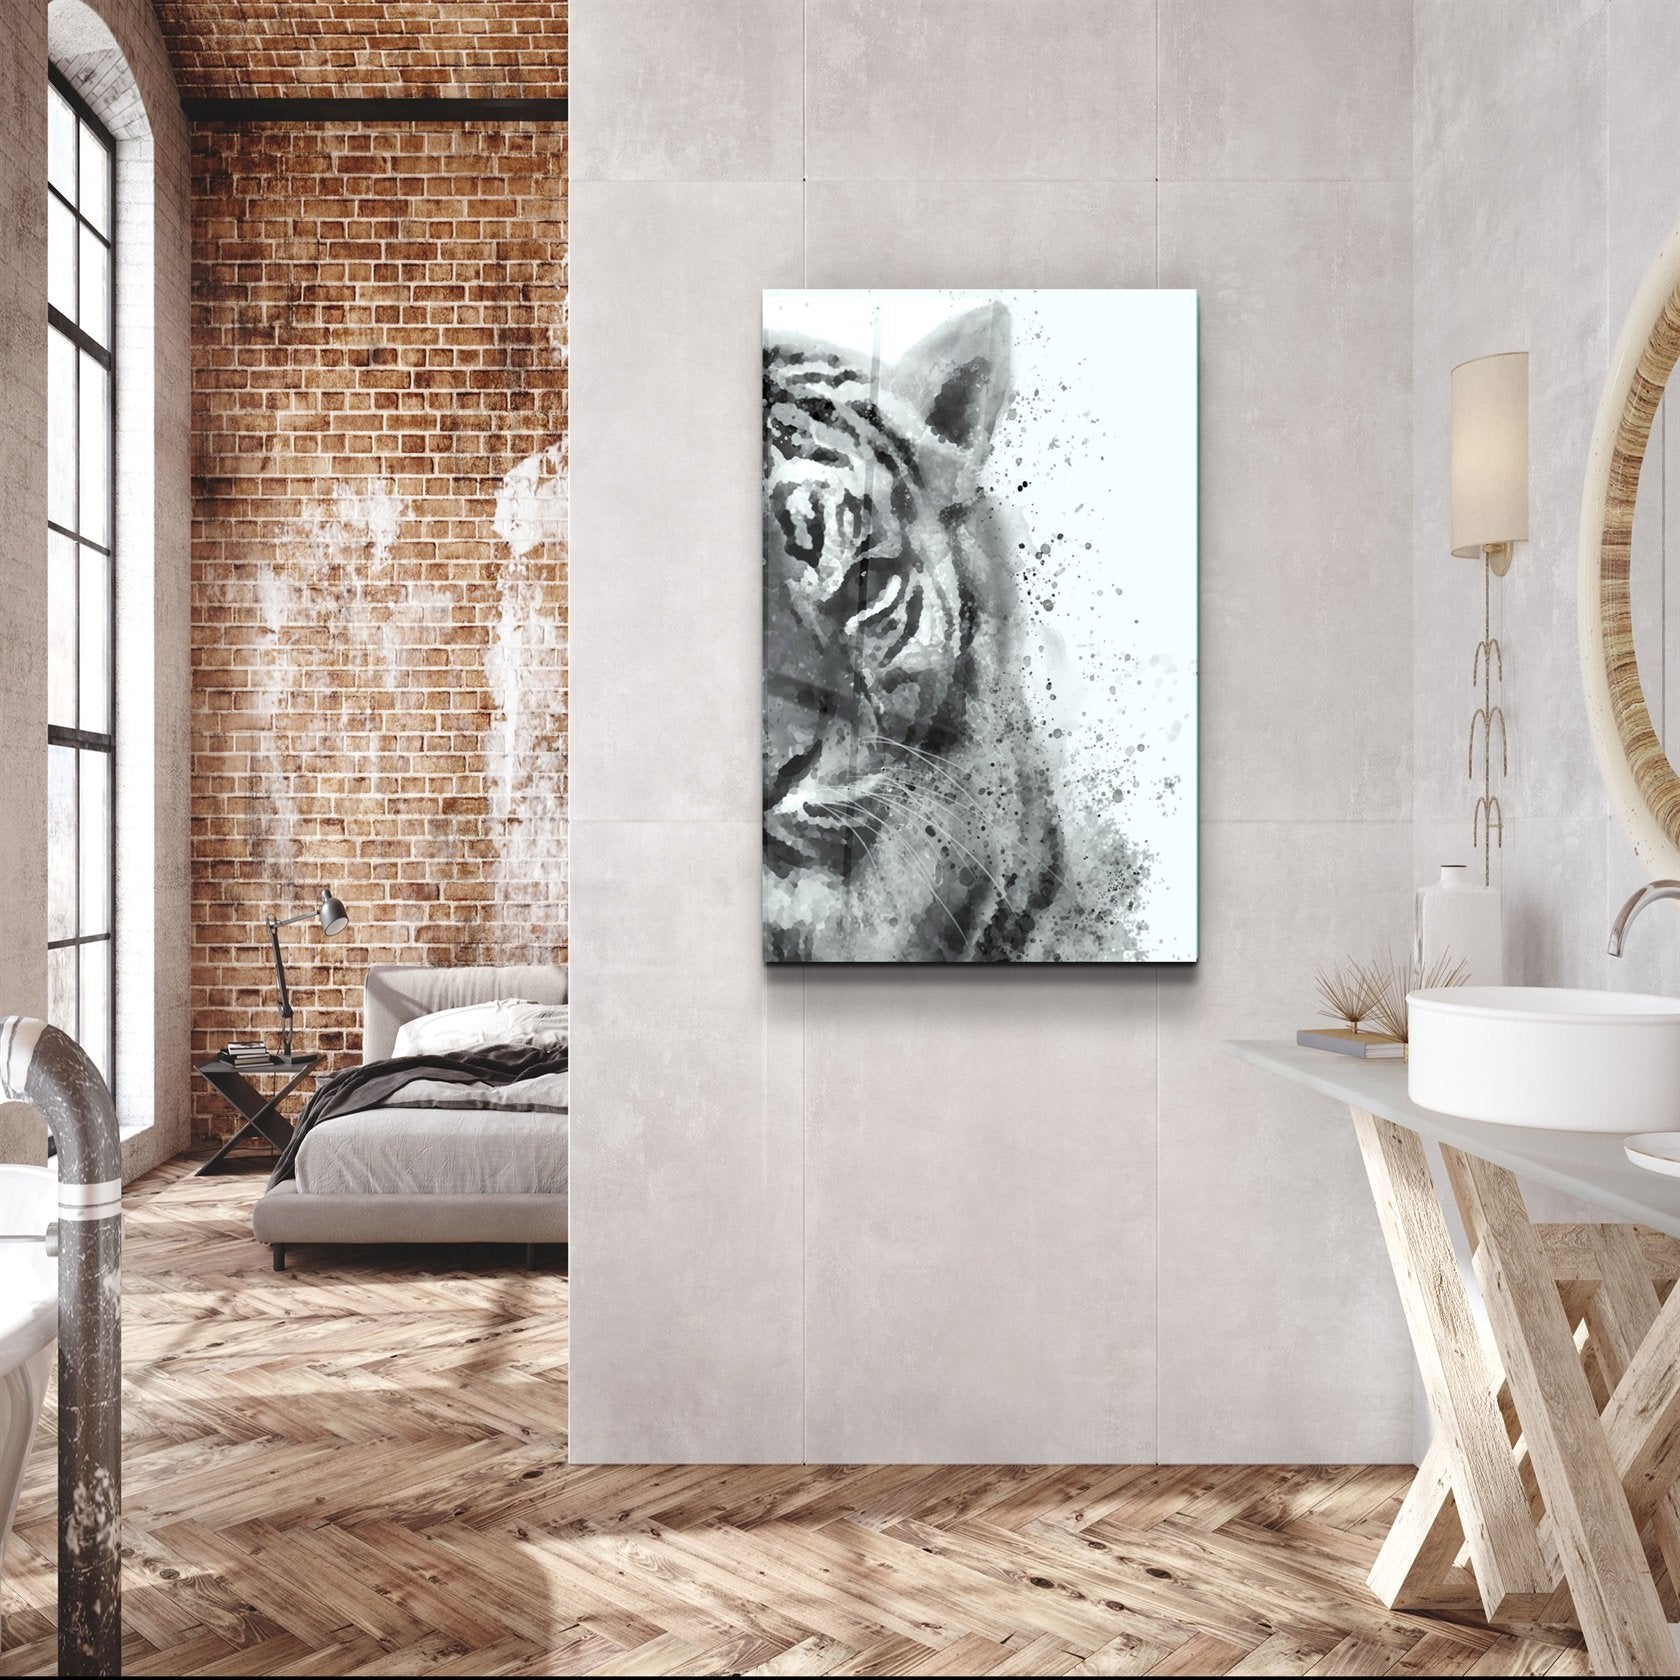 ・"Tiger 6"・Glass Wall Art